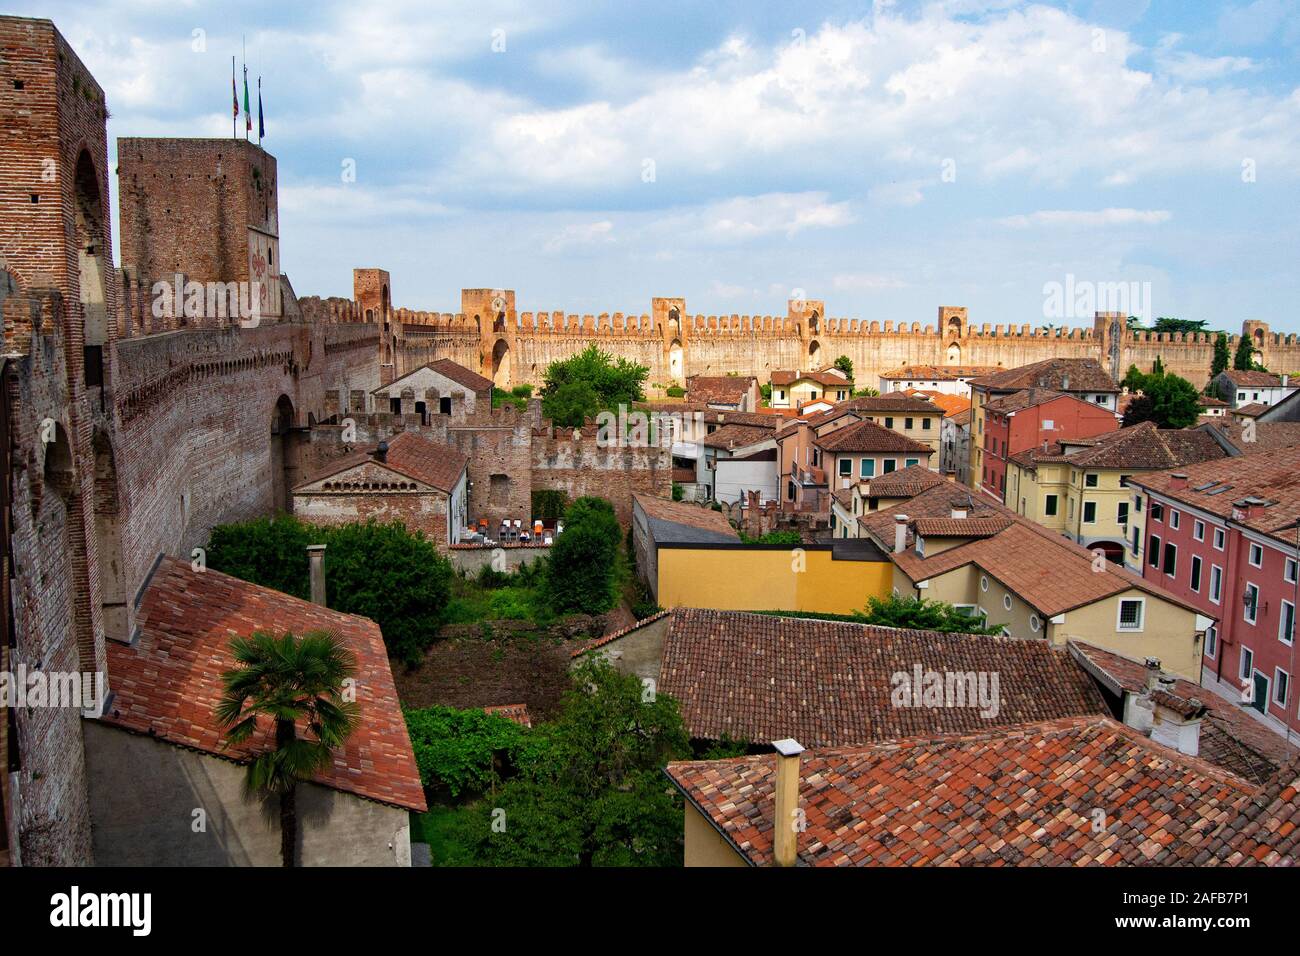 Le mura della città di Montagnana, Padova, nel nord Italia, la fortificazione medioevale surraunds tutti la vecchia città storica Foto Stock